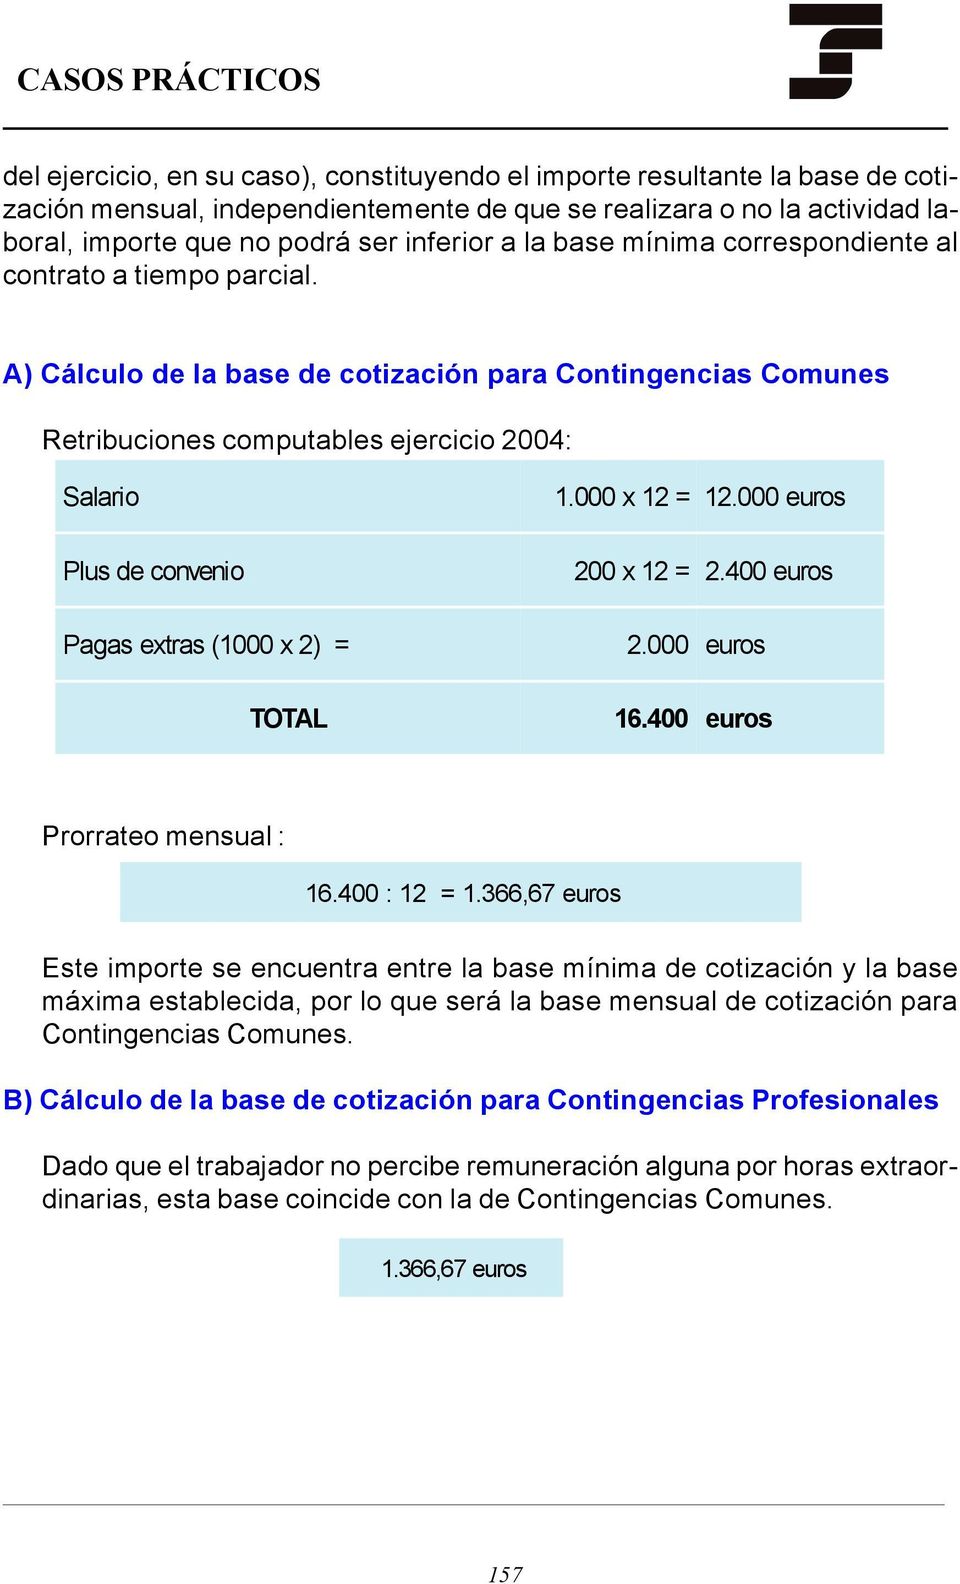 A) Cálculo de la base de cotización para Contingencias Comunes Retribuciones computables ejercicio 2004: Salario Plus de convenio Pagas extras (1000 x 2) = TOTAL 1.000 x 12 = 12.